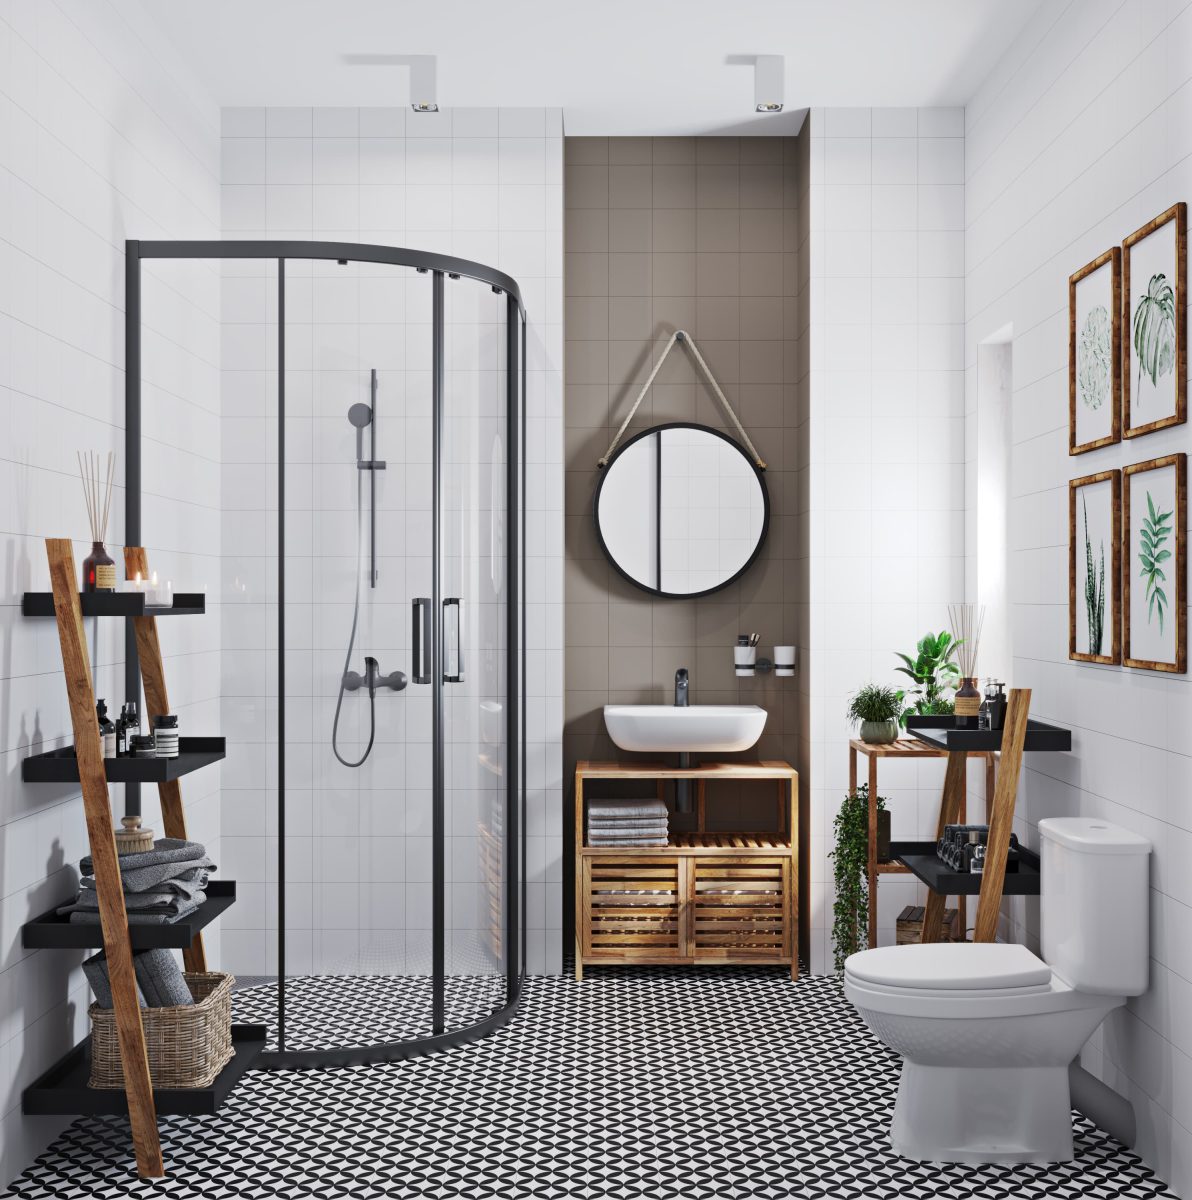 SIKO Moderná čiernobiela kúpeľňa, drevený nábytok a regály v kúpeľni, posuvné sprchové dvere s čiernymi profilmi, čierne kúpeľňové batérie, kombi WC